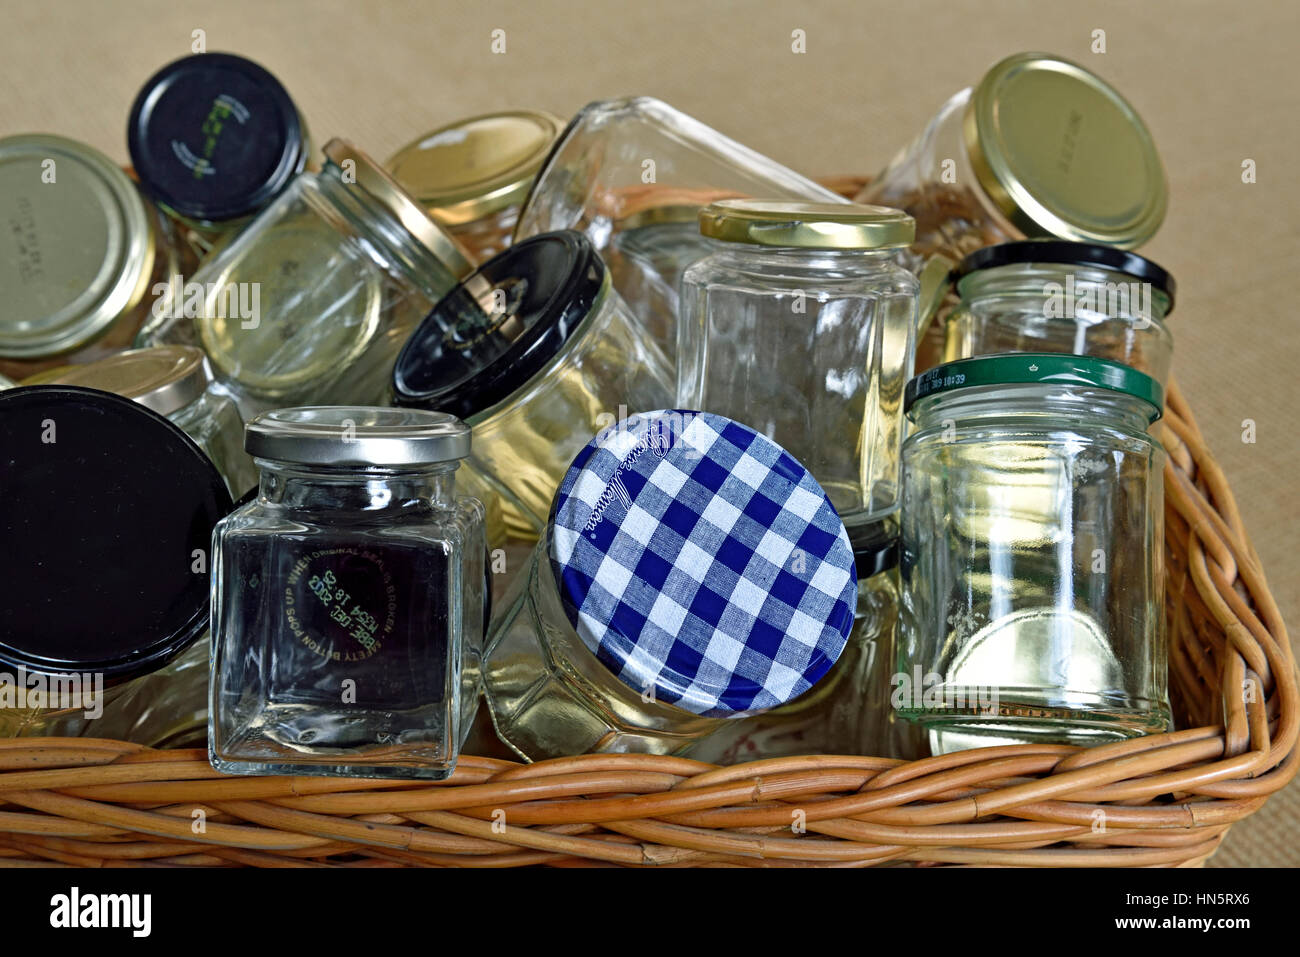 Vasetti di vetro vuoti con coperchi in cestello lavati e pronti per il riutilizzo, lo stoccaggio o il riciclaggio. Foto Stock